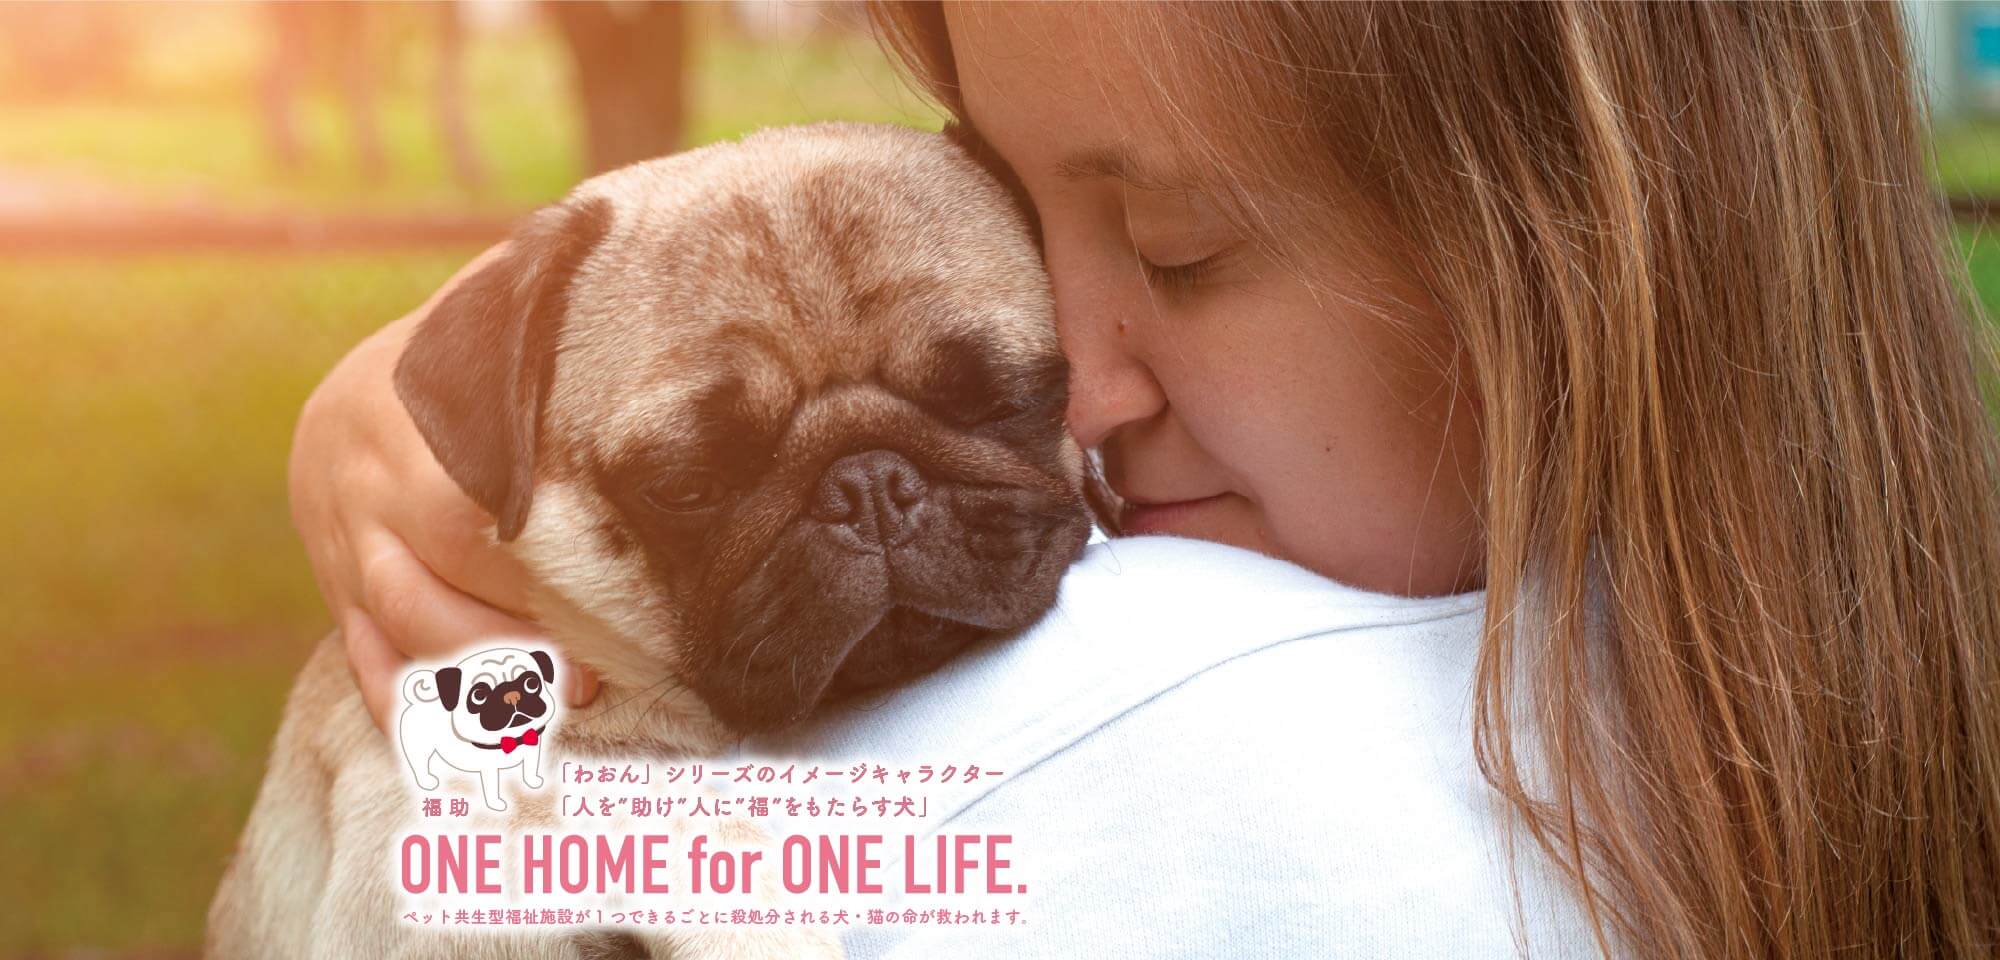 「わおん」シリーズのイメージキャラクター「人を”助け”人に”福”をもたらす犬」福助 ペット共生型福祉施設が1つできるごとに殺処分される犬・猫の命が救われます。